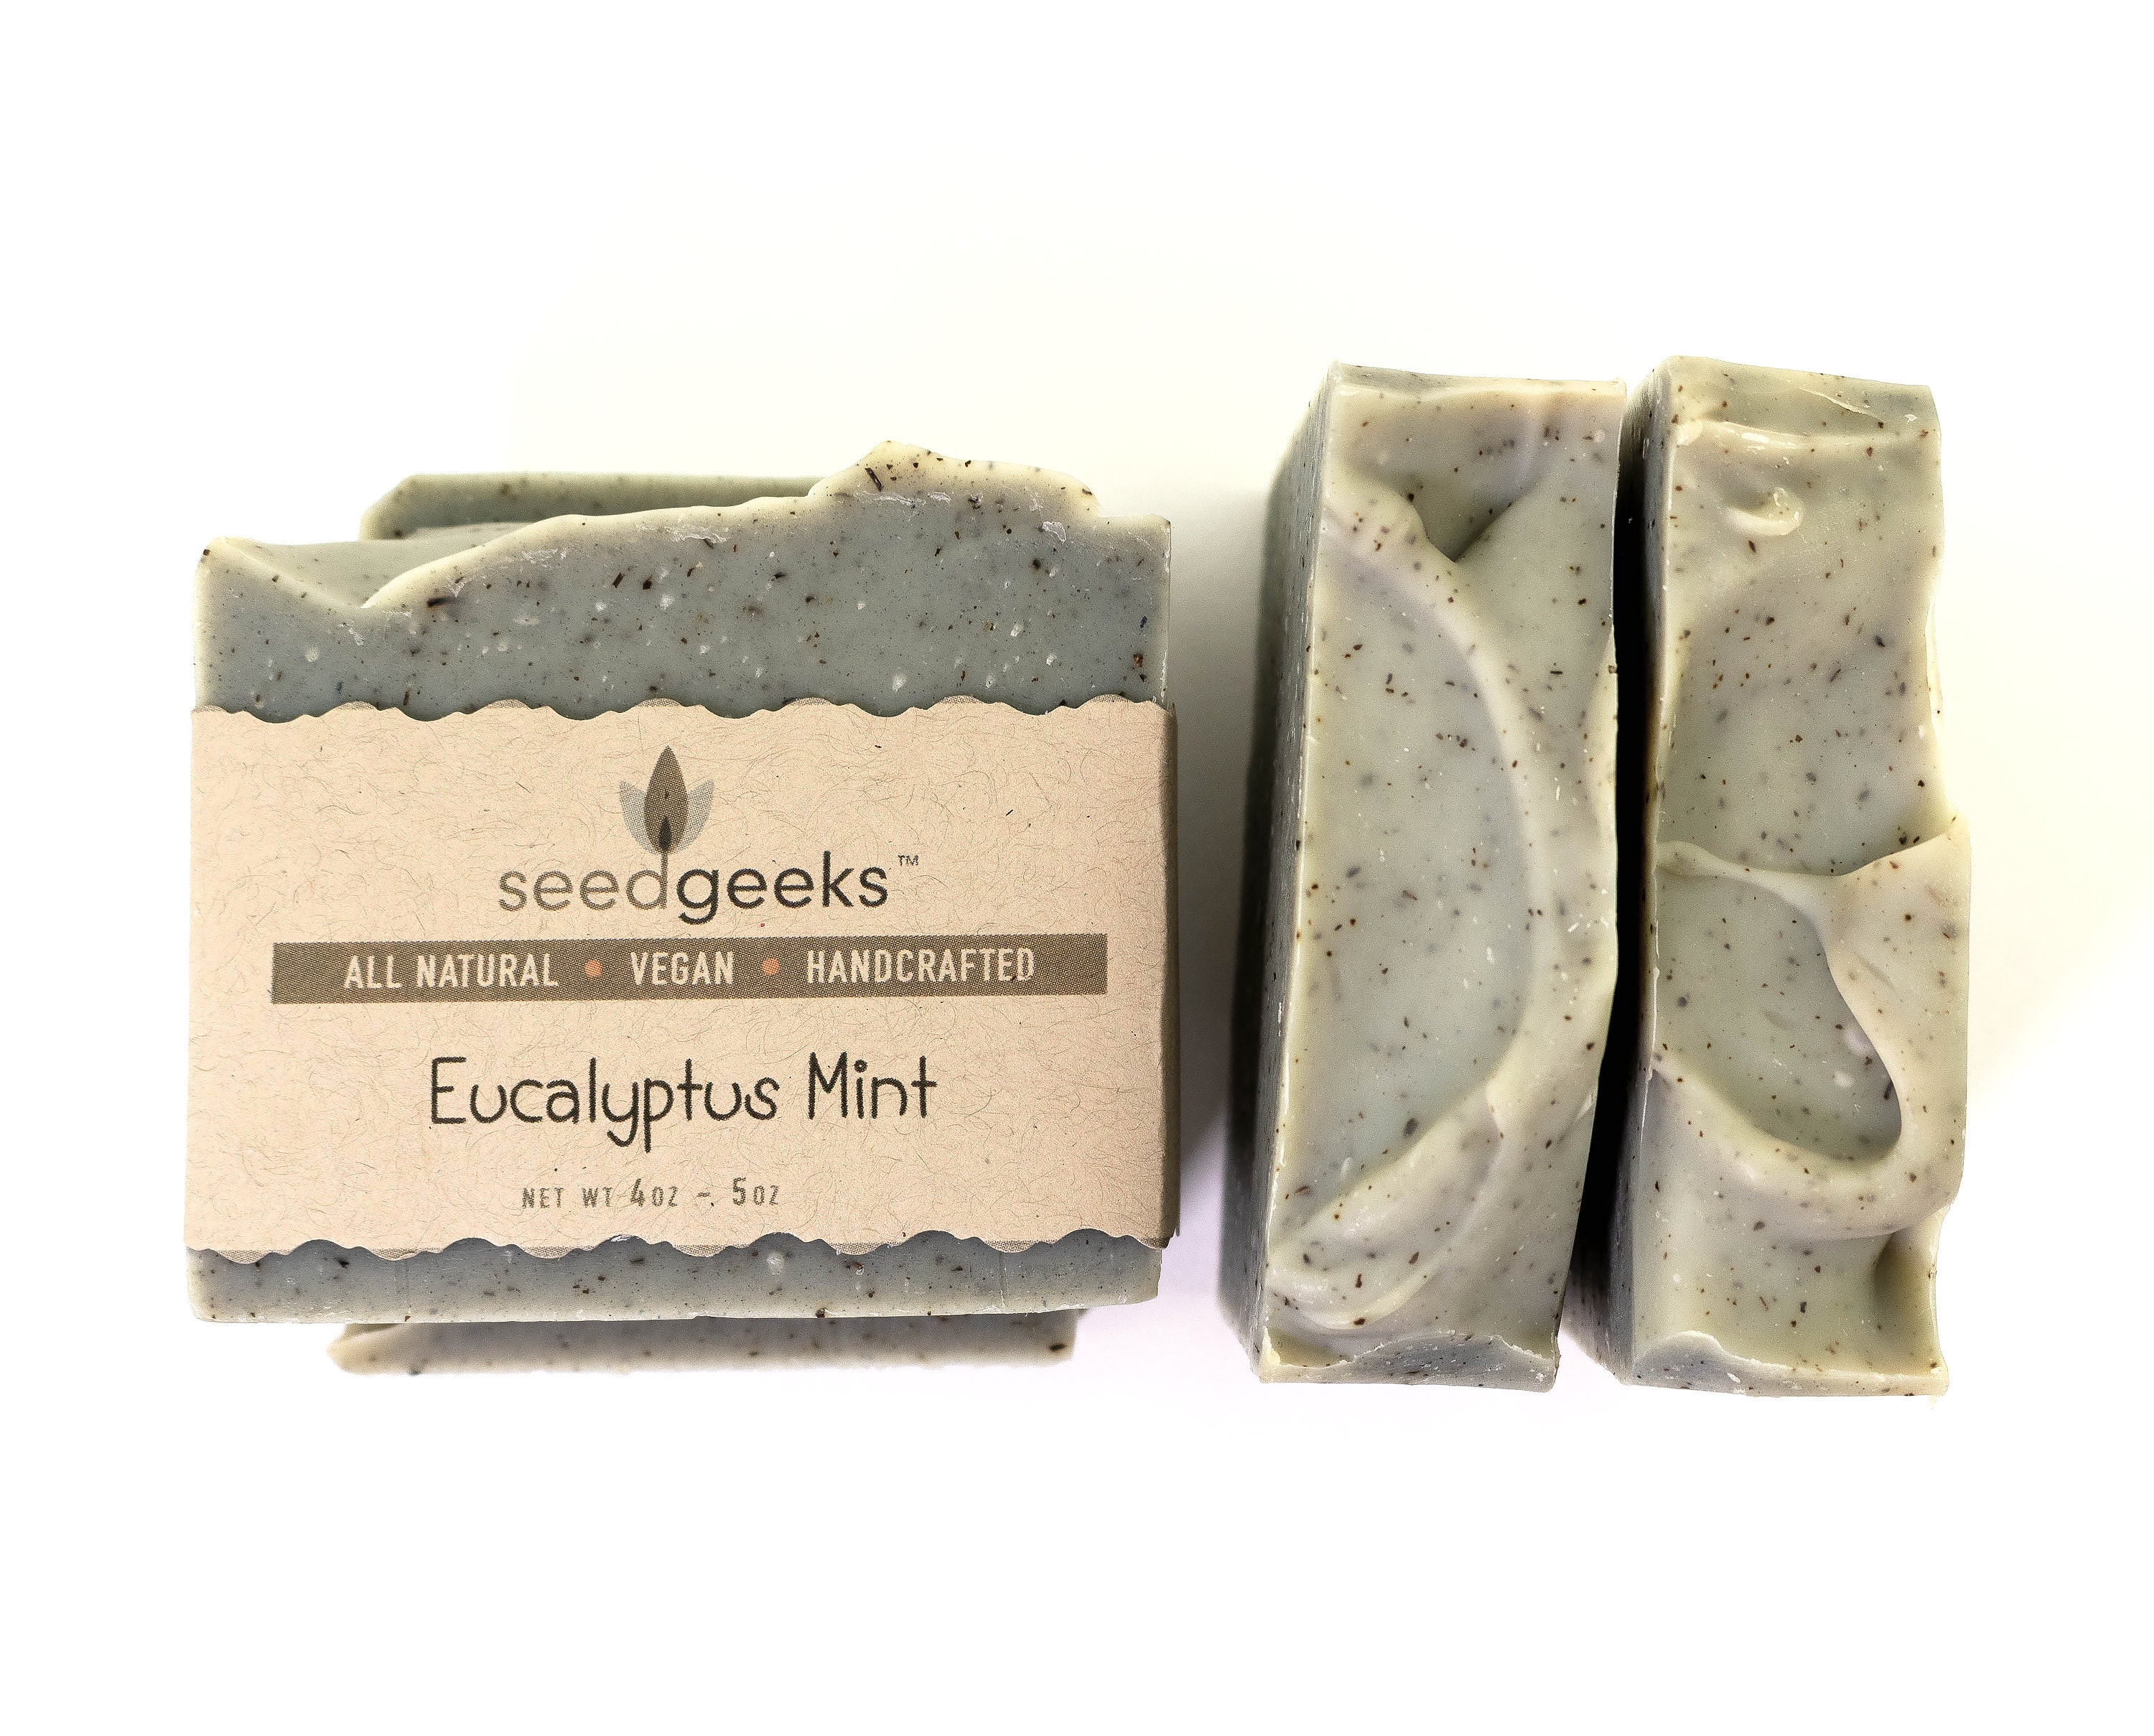 Organic All Natural Sea Salt Soap Bar – Soap Dudes